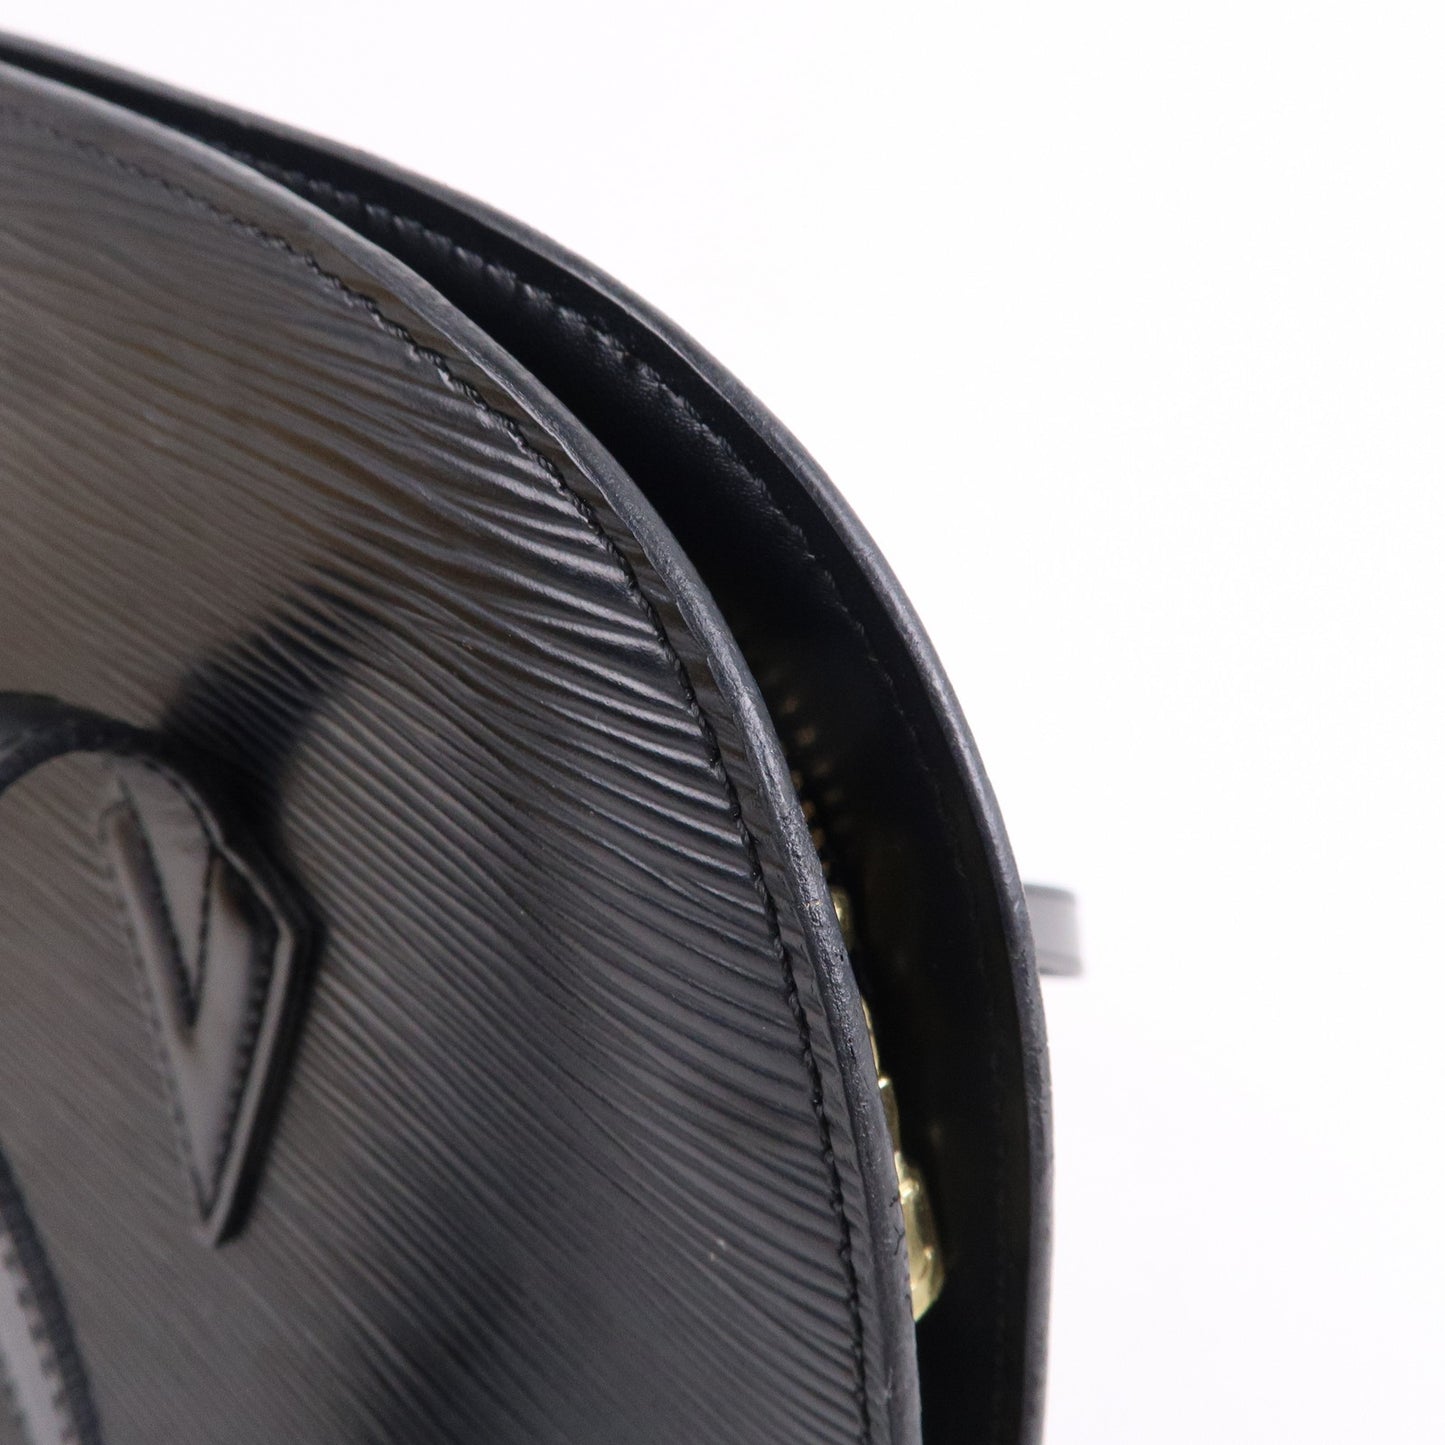 Louis-Vuitton-Epi-Lussac-Shoulder-Bag-Noir-Black-M52282 – dct